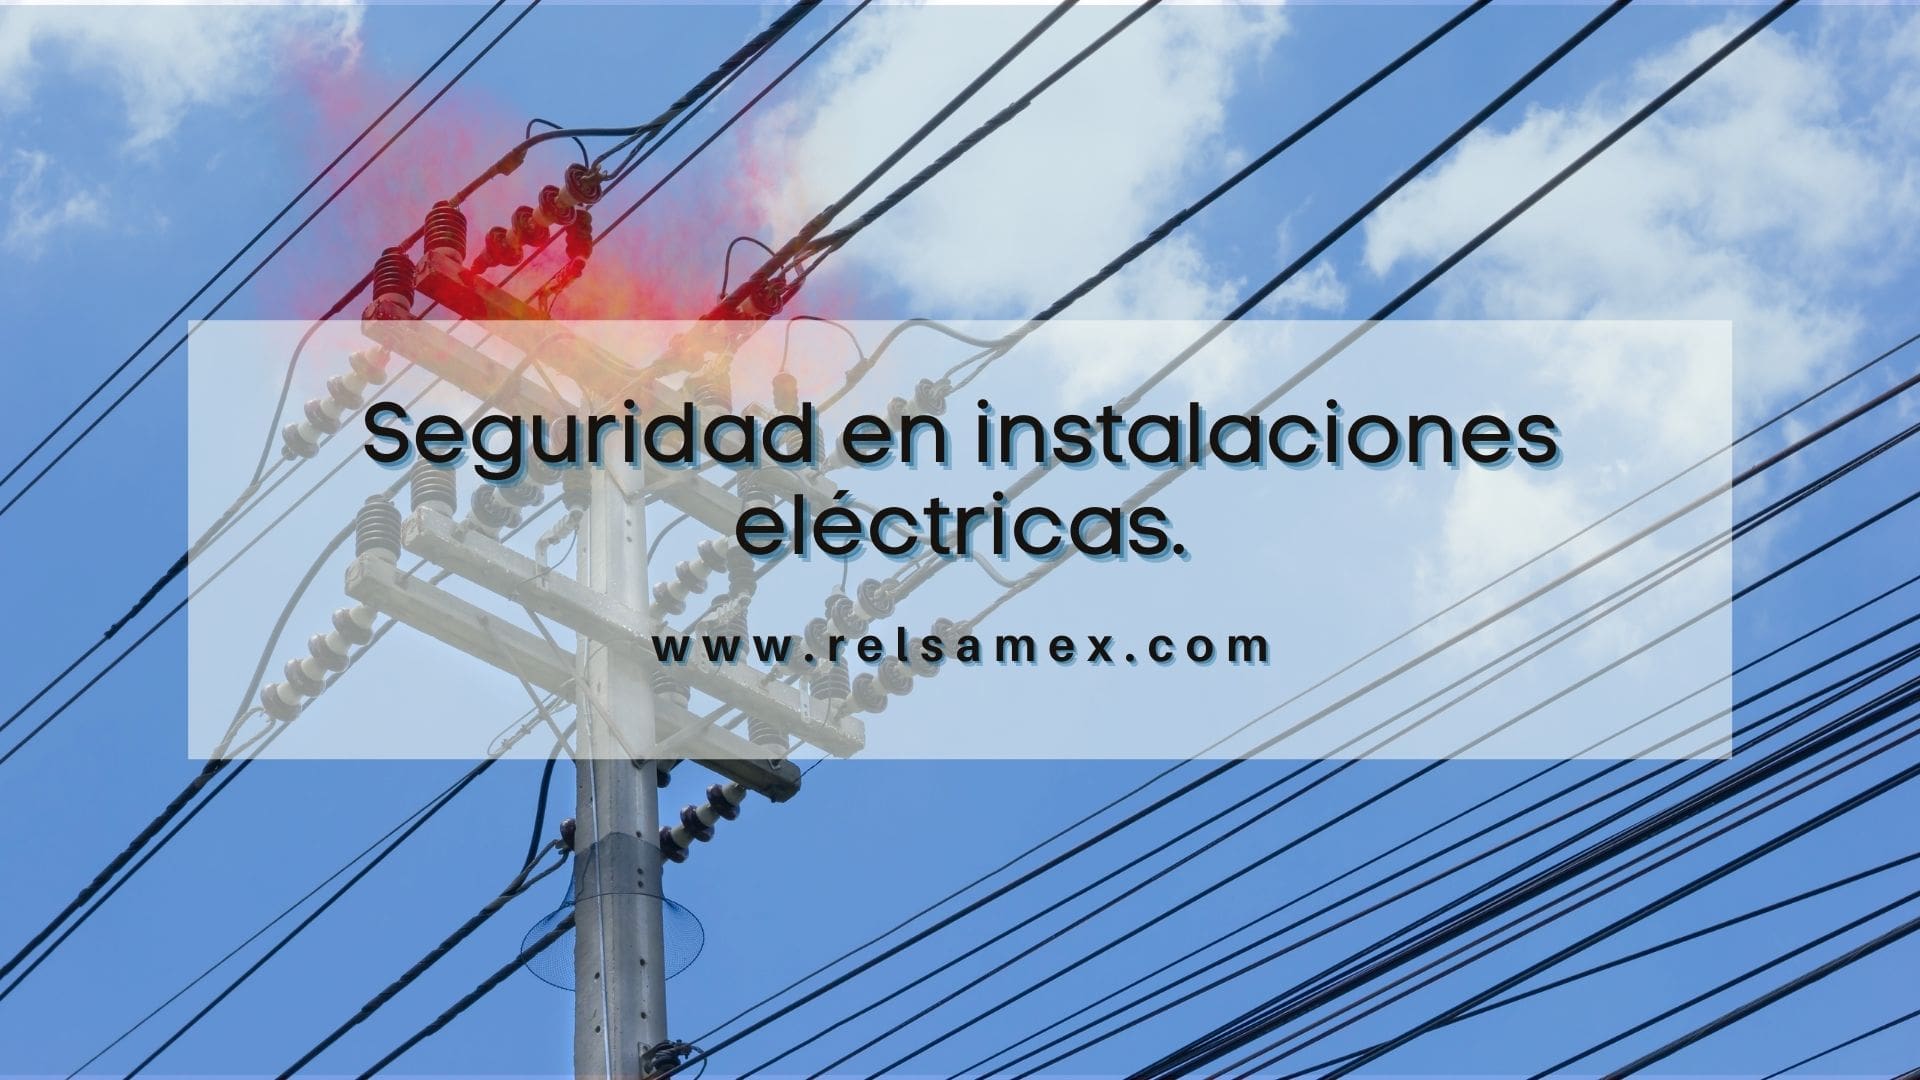 leninismo grua descuento Seguridad en instalaciones eléctricas. - RELSAMEX